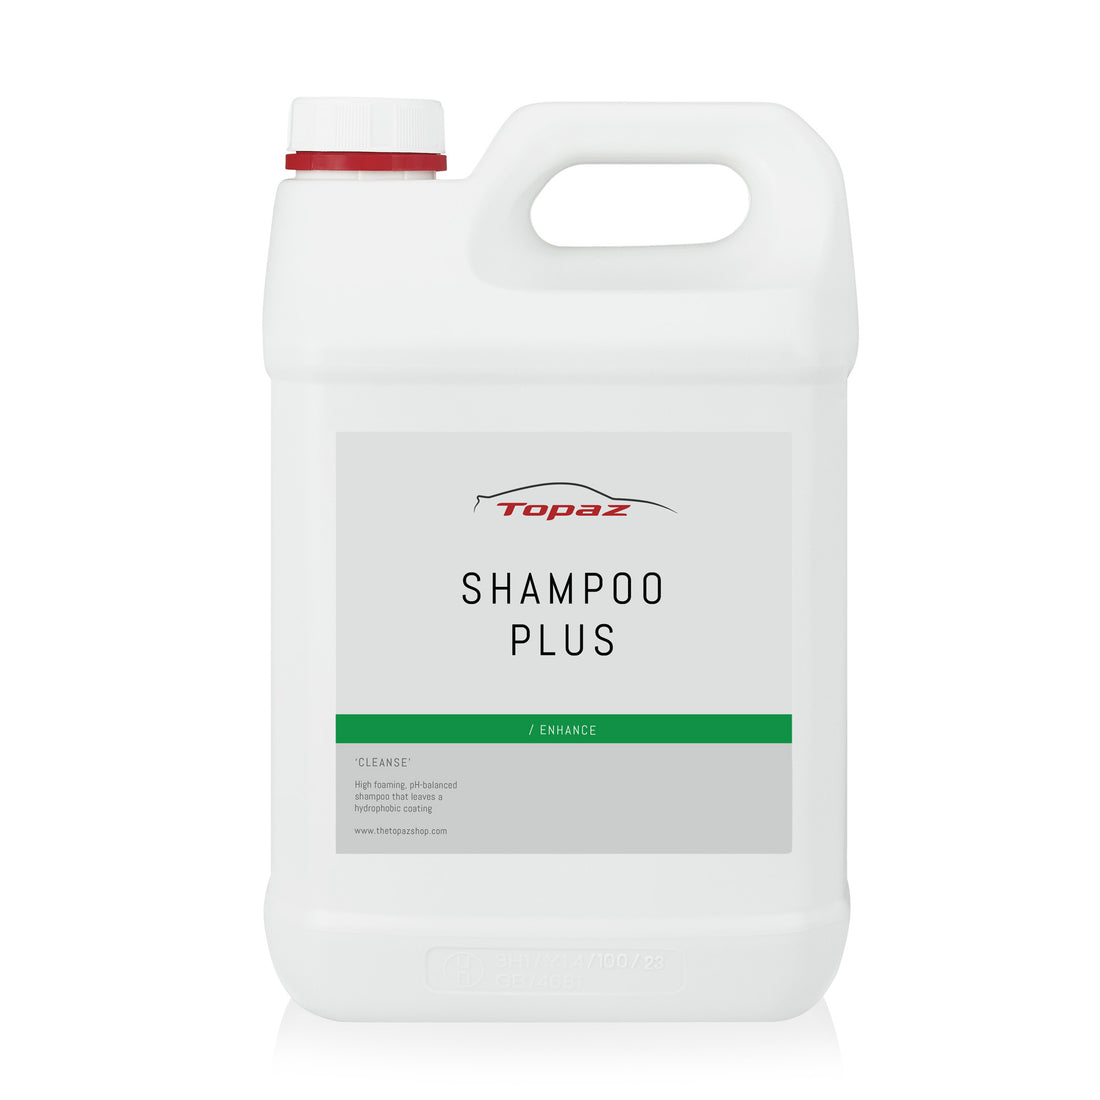 Shampoo Plus